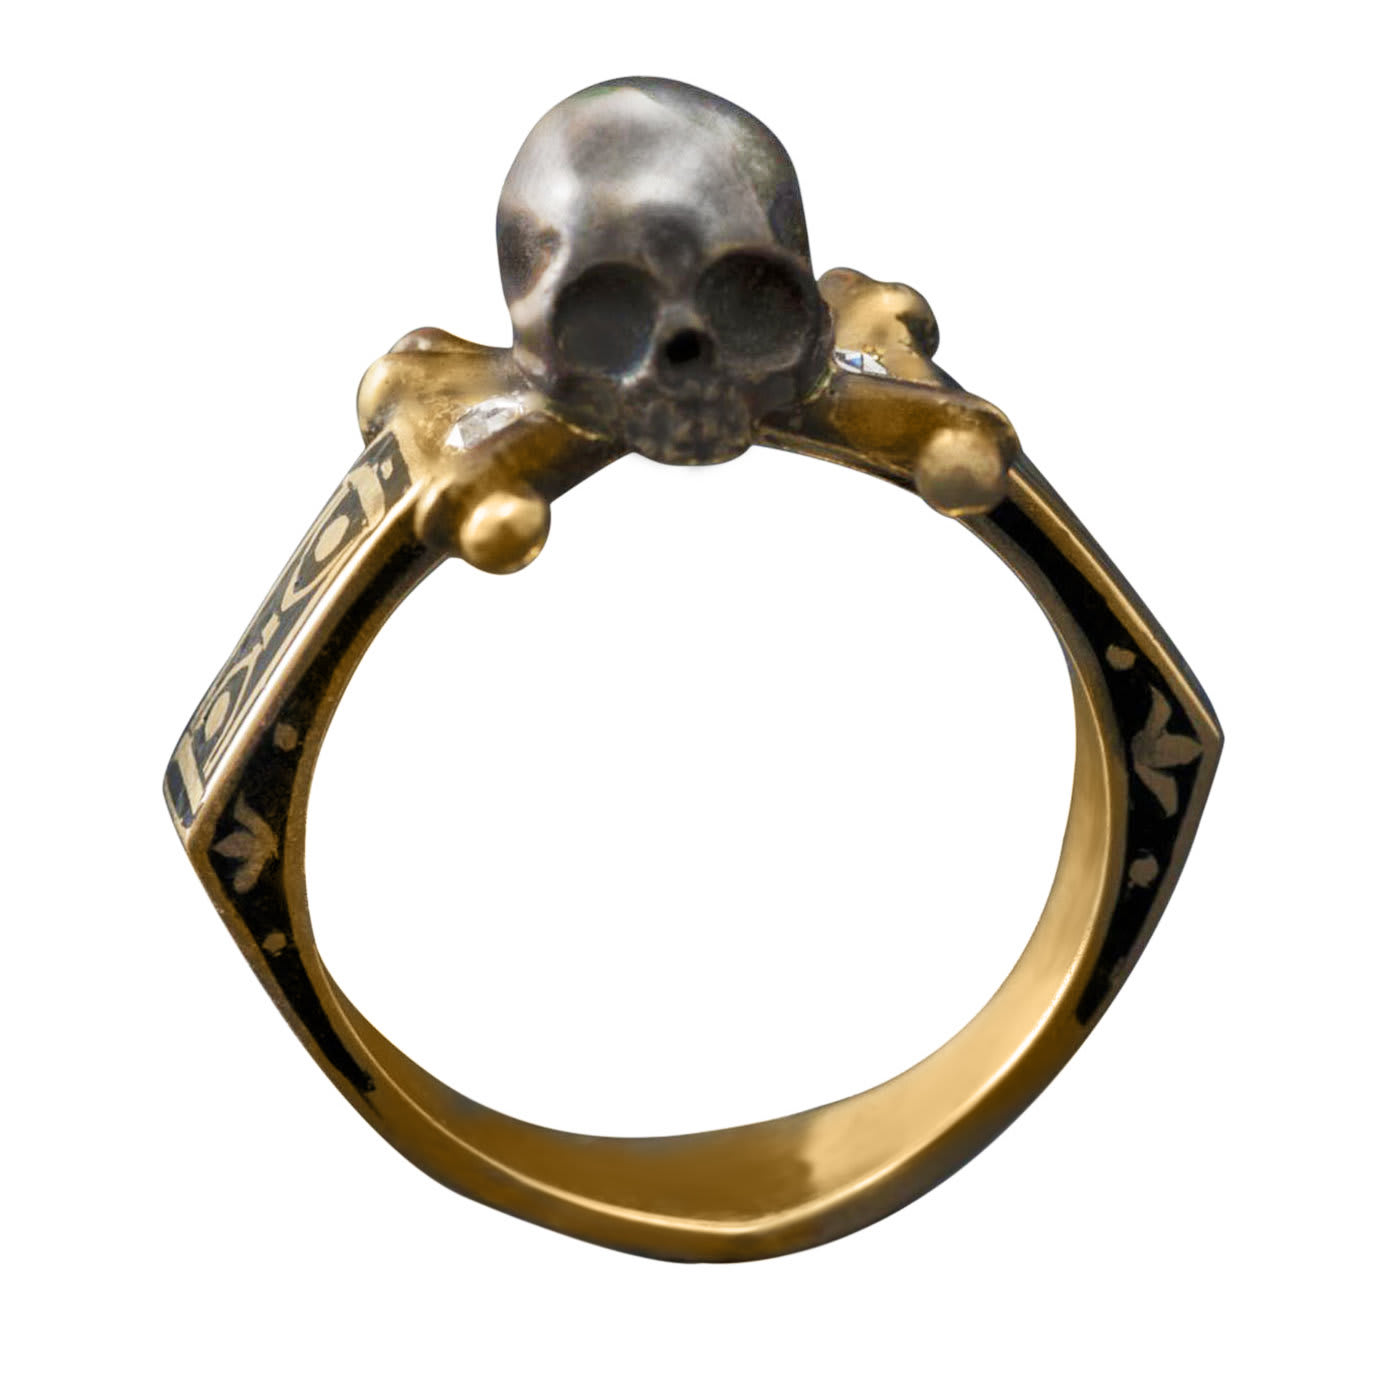 Teschio Unico Gold and Diamond Ring - Sigfrido Cipolato